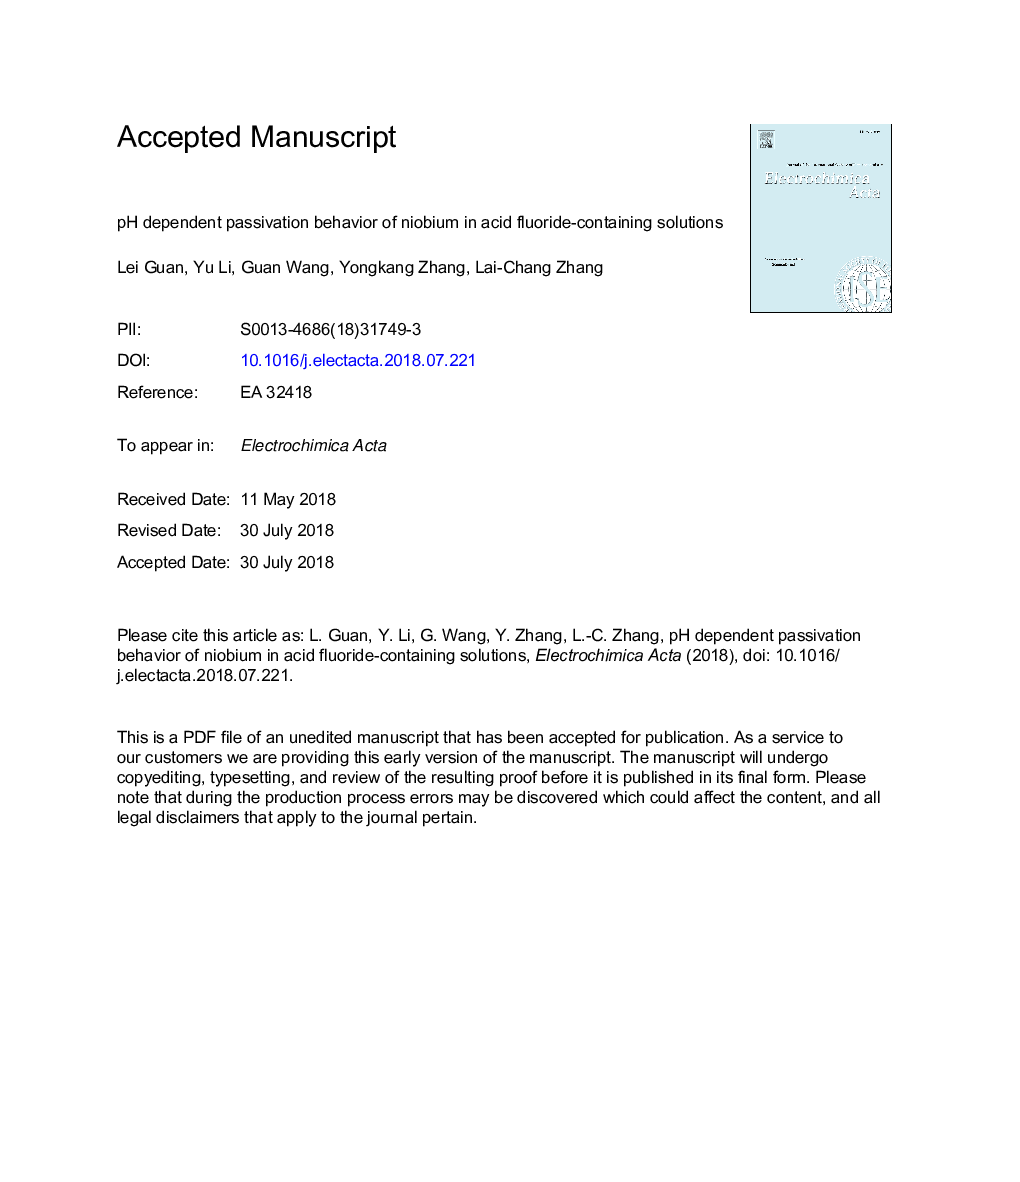 pH dependent passivation behavior of niobium in acid fluoride-containing solutions